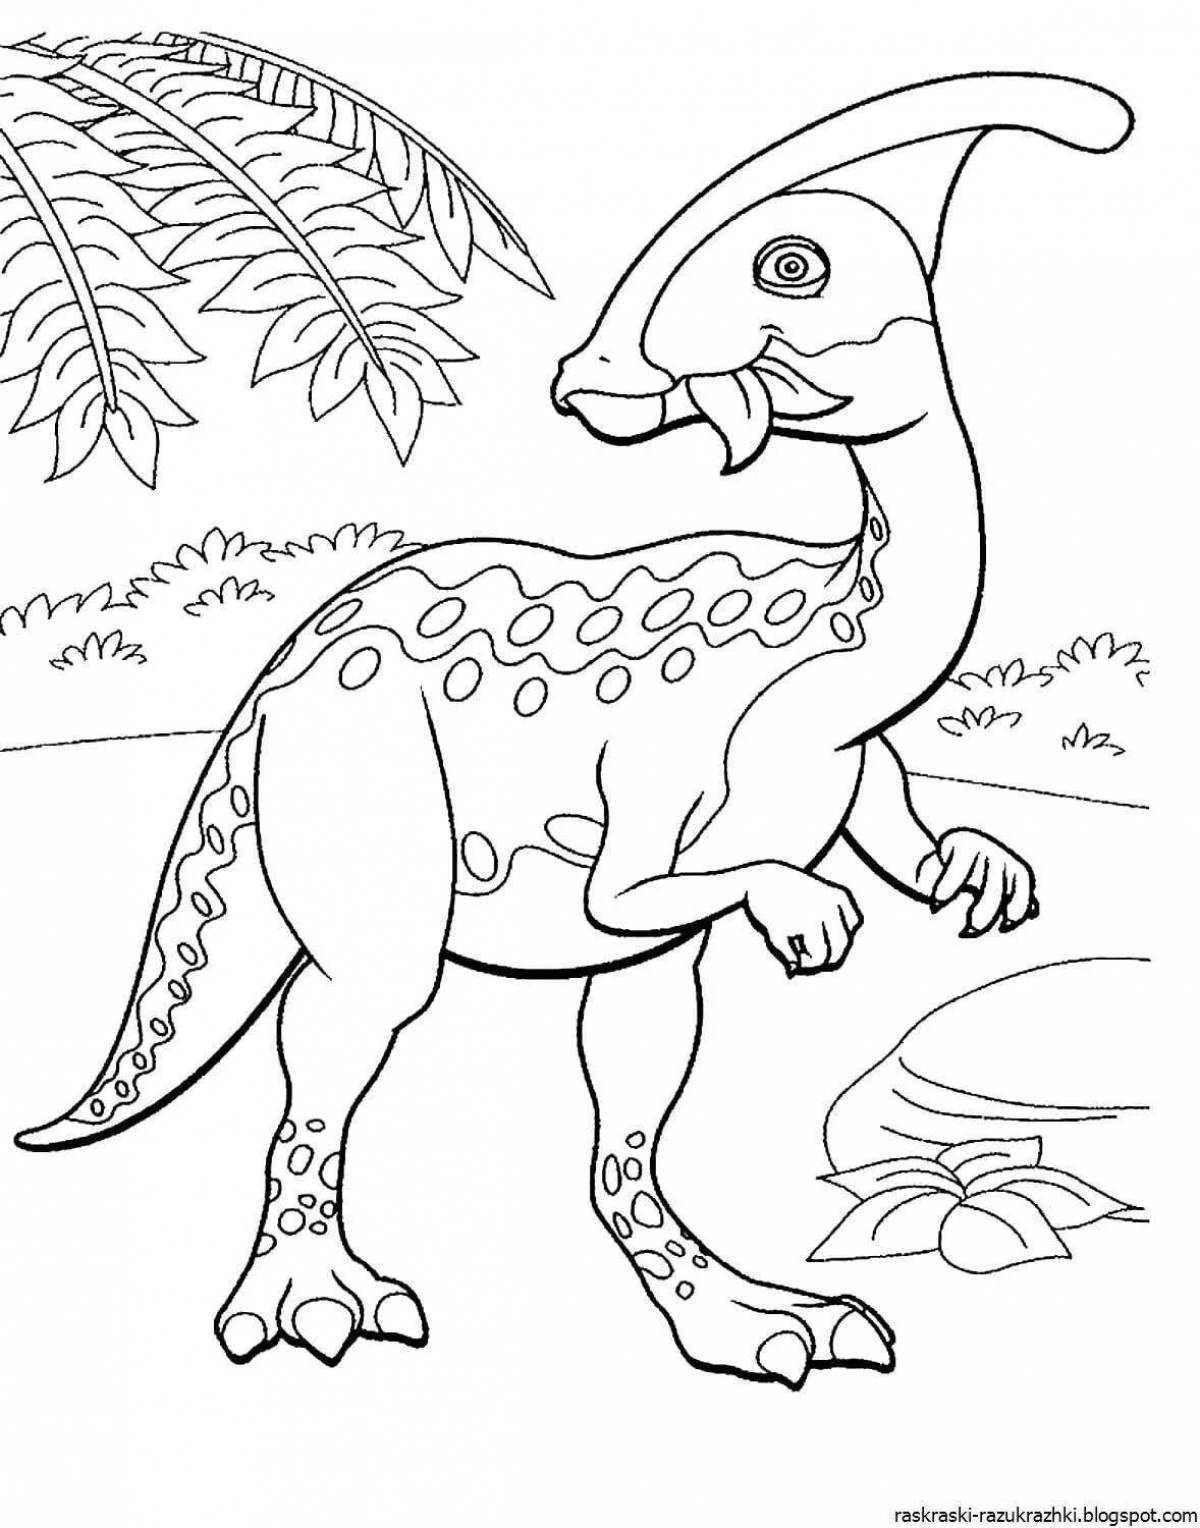 Разноцветная раскраска динозавров для детей